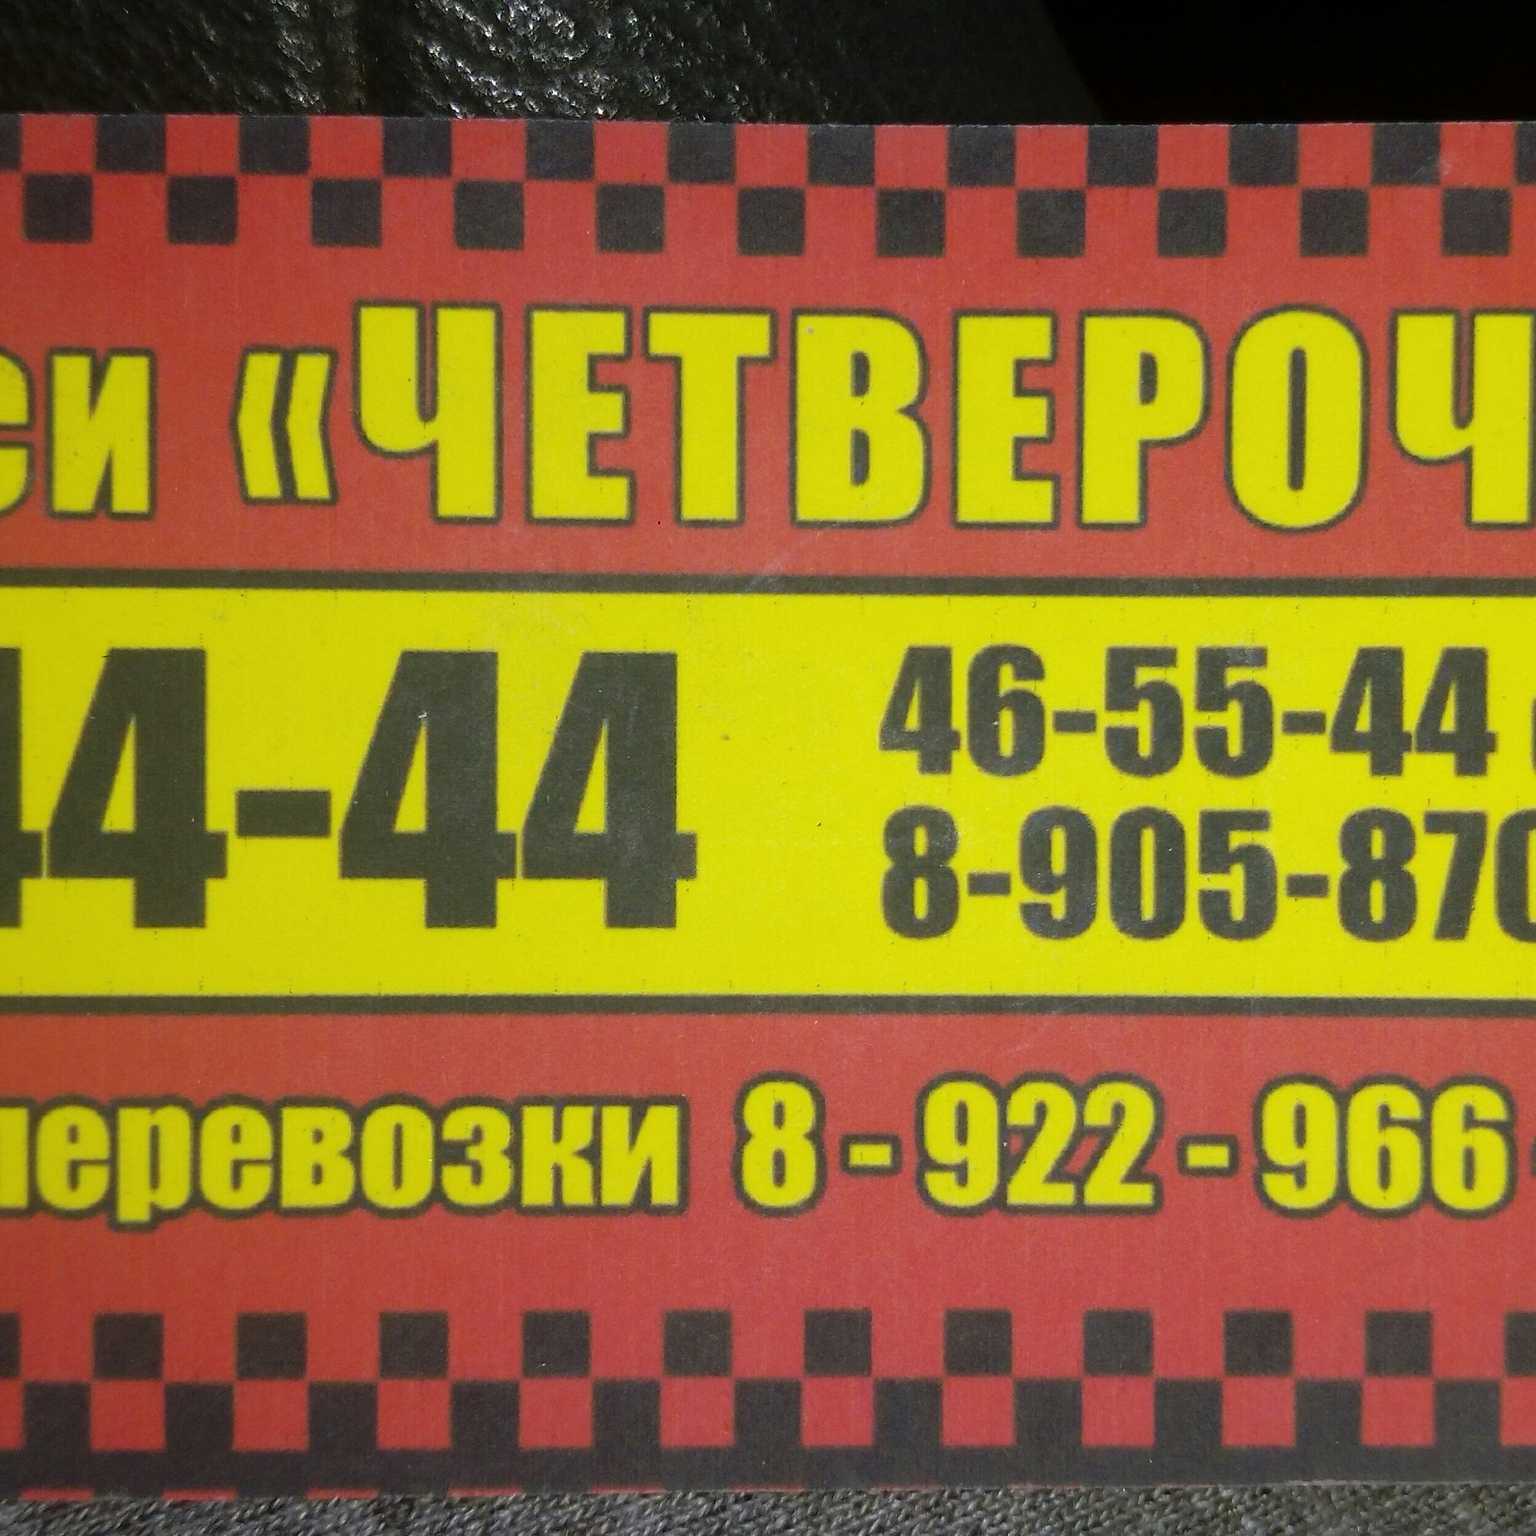 Такси кропоткин телефон. Такси Слободской. Номера такси Слободской. Такси город Кропоткин. Такси четверочки.